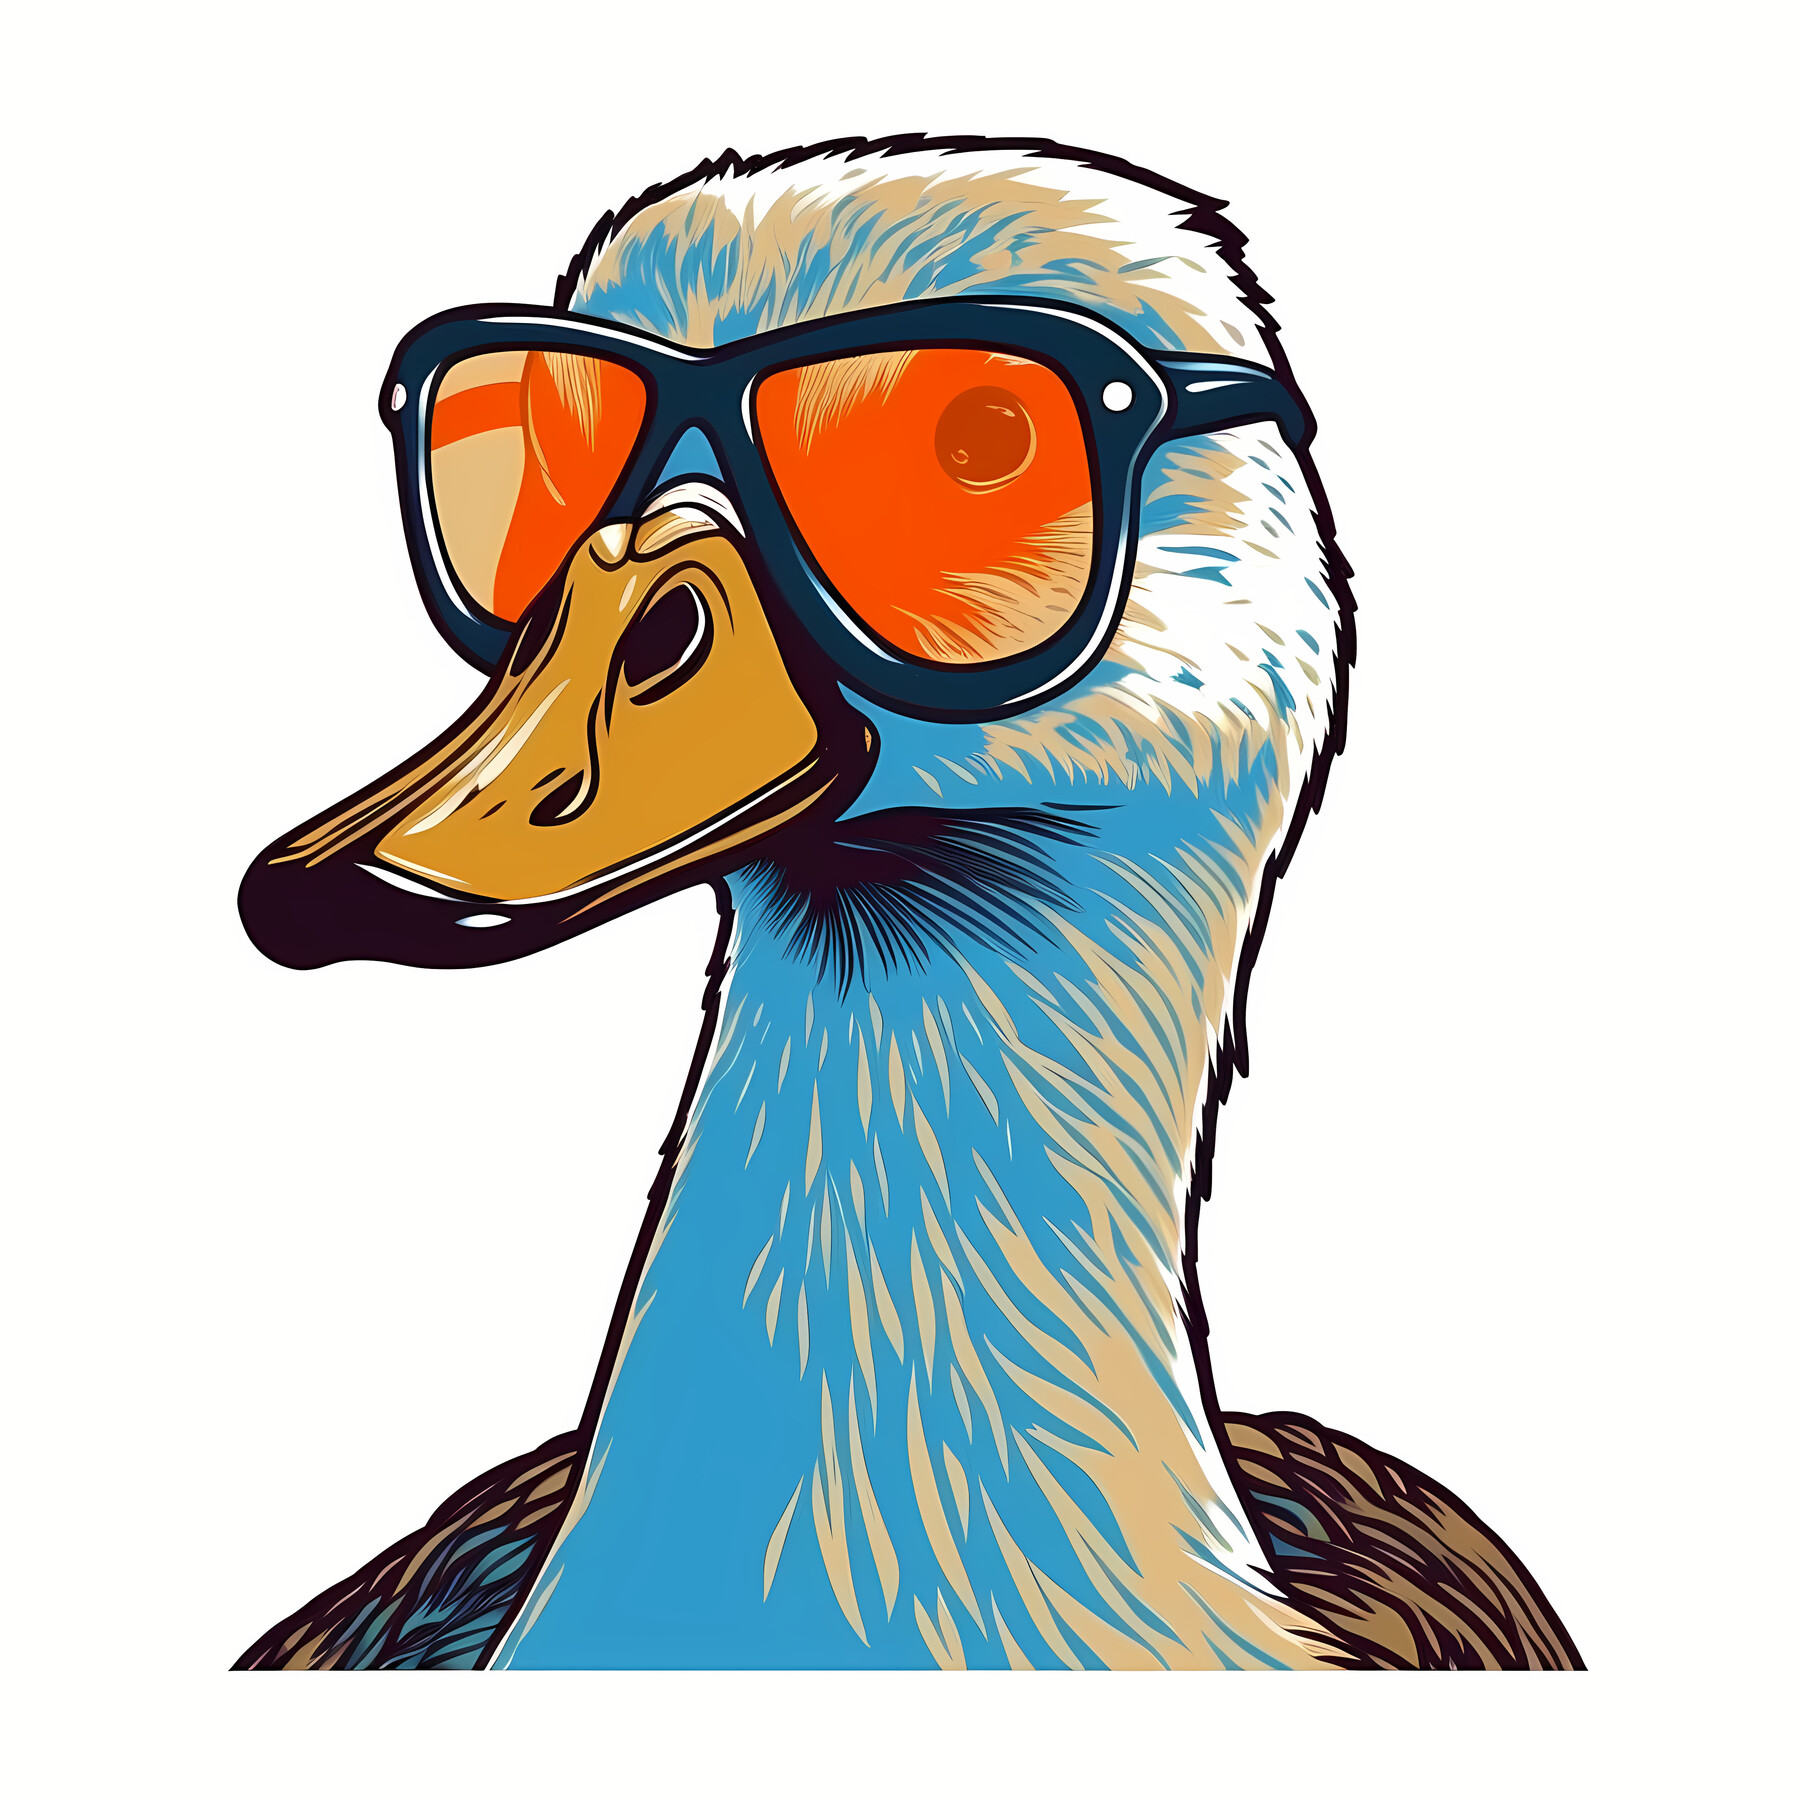 ArtStation - Clever goose wearing orange sunglasses | Artworks